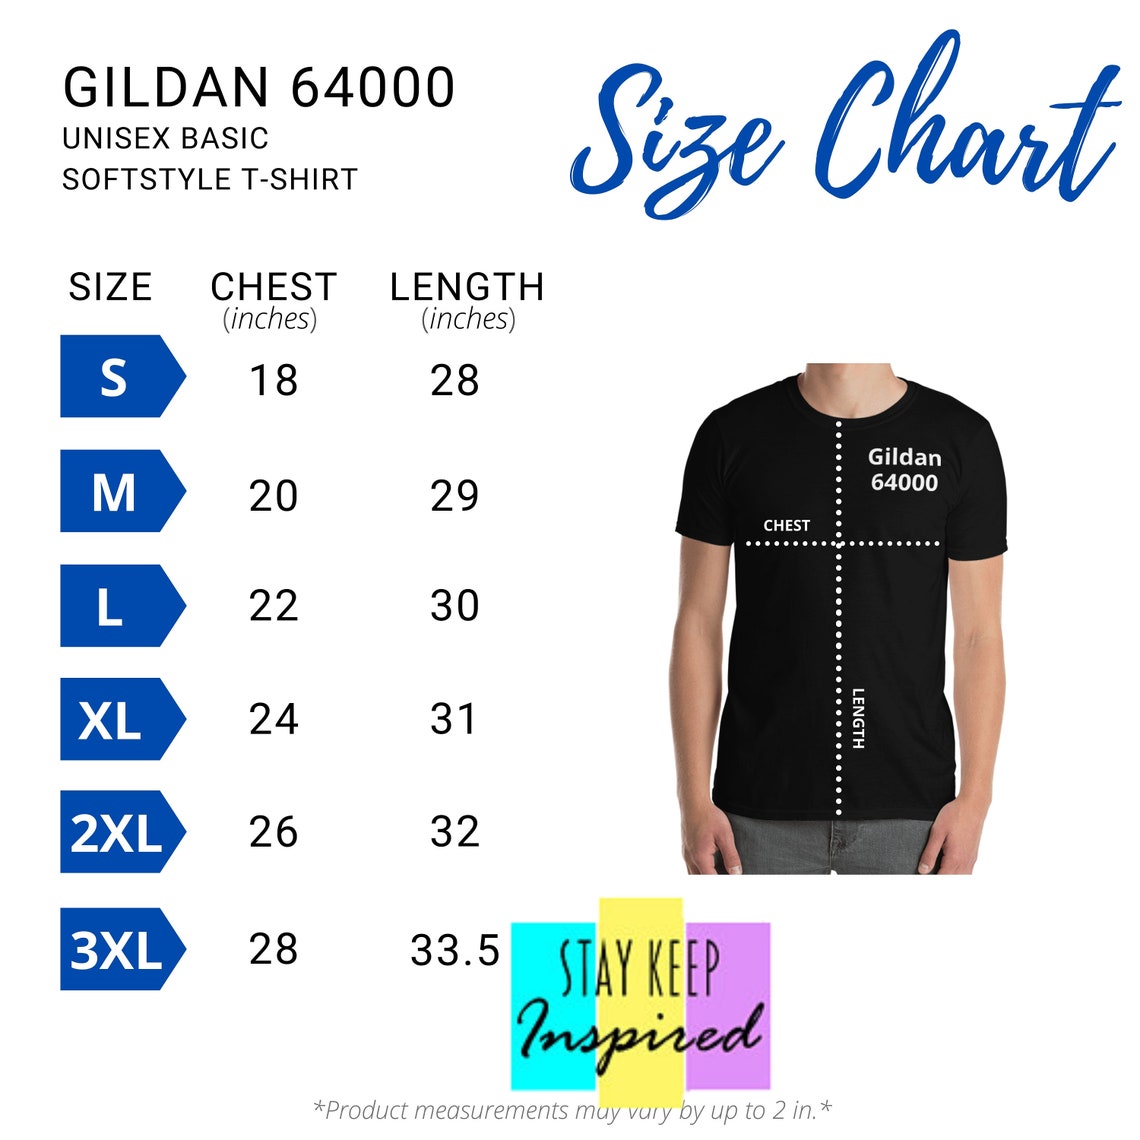 Gildan 64000 Unisex Basic Softstyle T-shirt Size Chart - Etsy